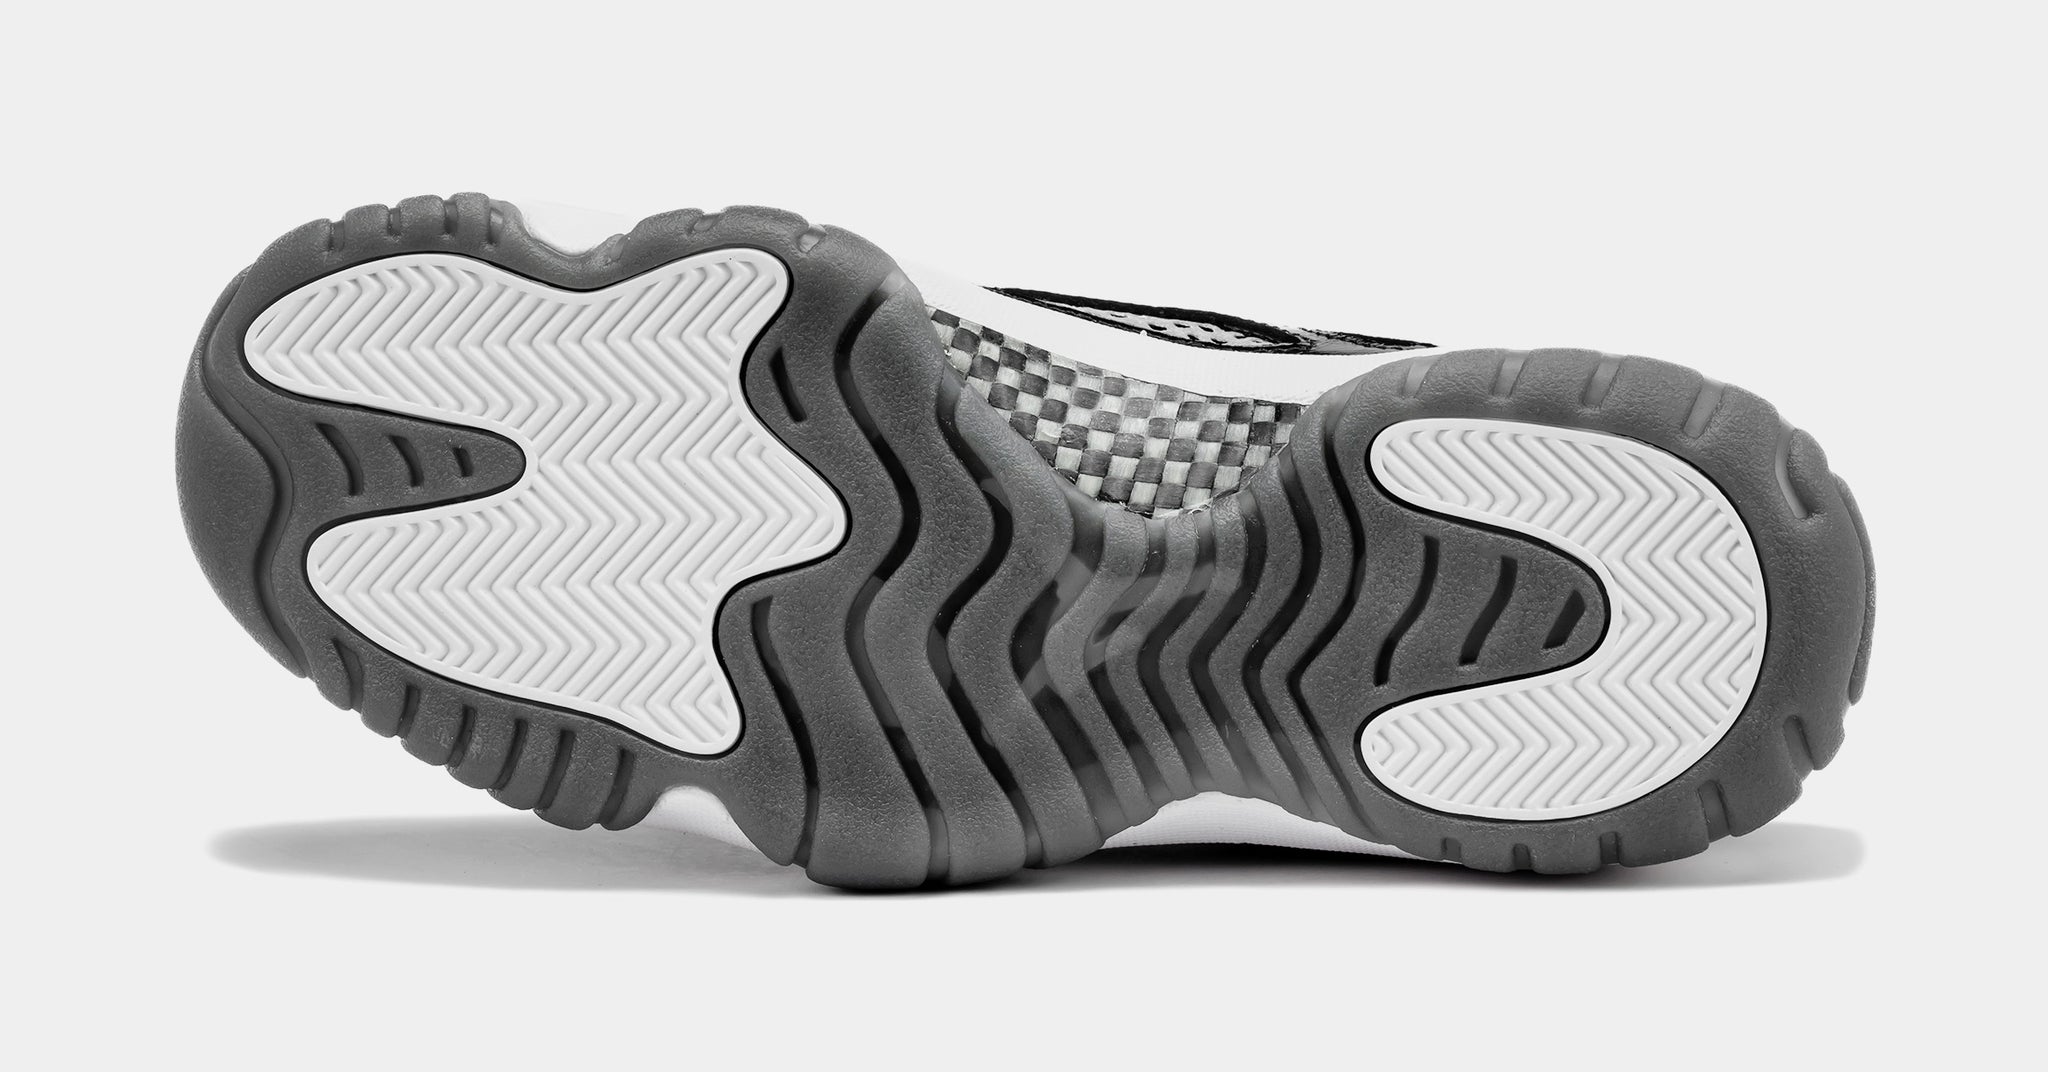 Corporate on Instagram: The Air Jordan 11 Low IE 'Black/White